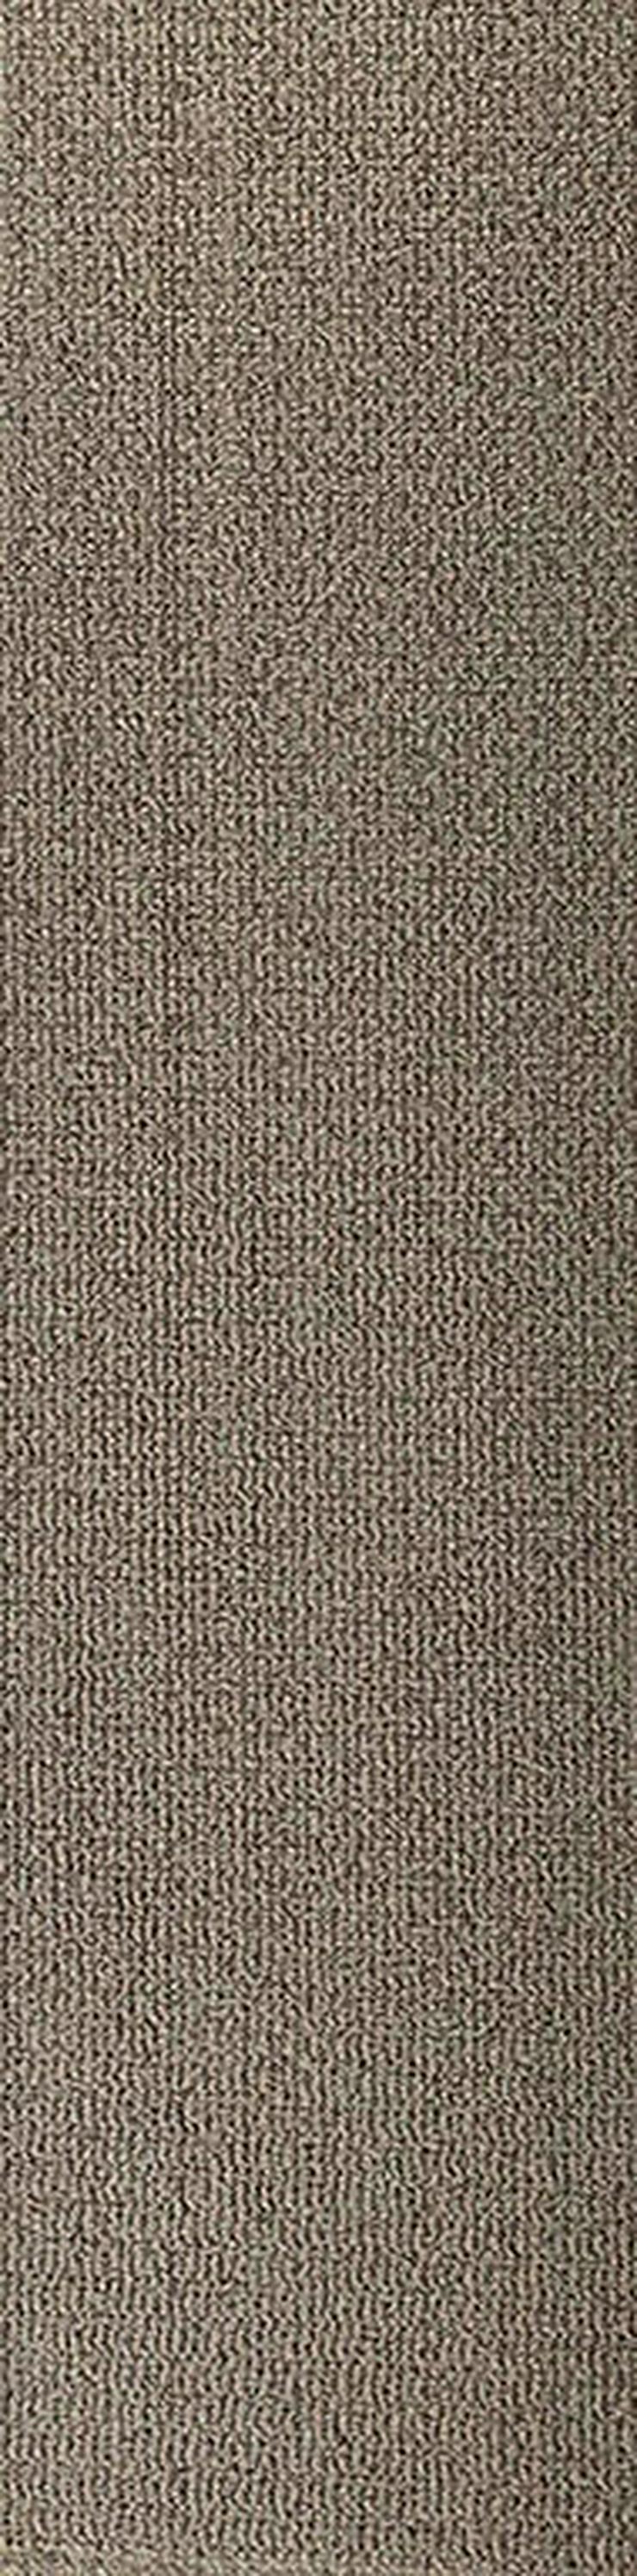 Bild 5: 25x100cm Design Teppichfliesen Projektfliesen Teppich